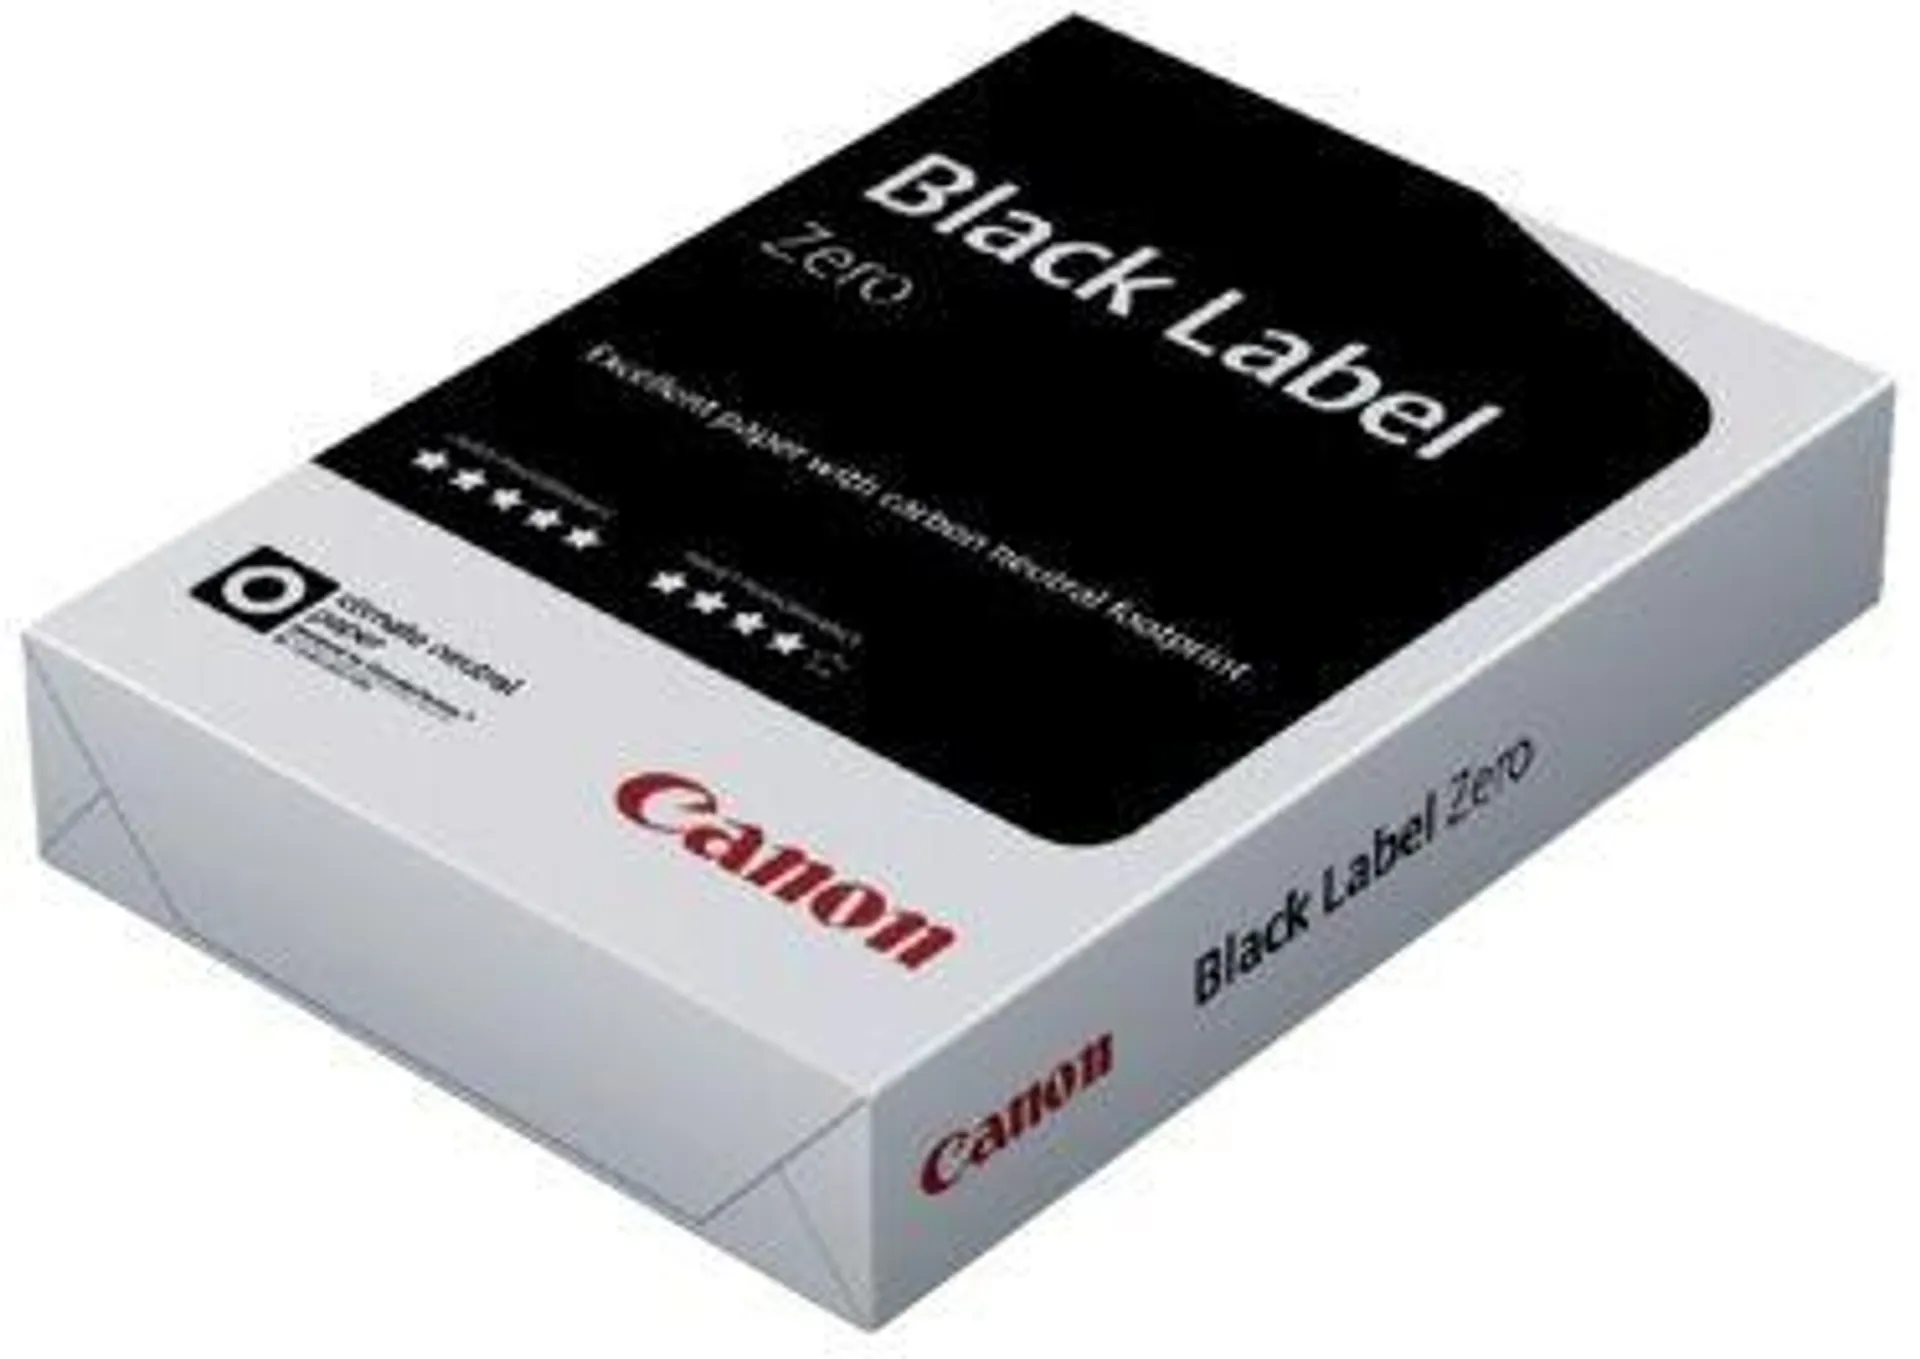 Canon Black Label Zero Papier A3 75 g/m² Wit